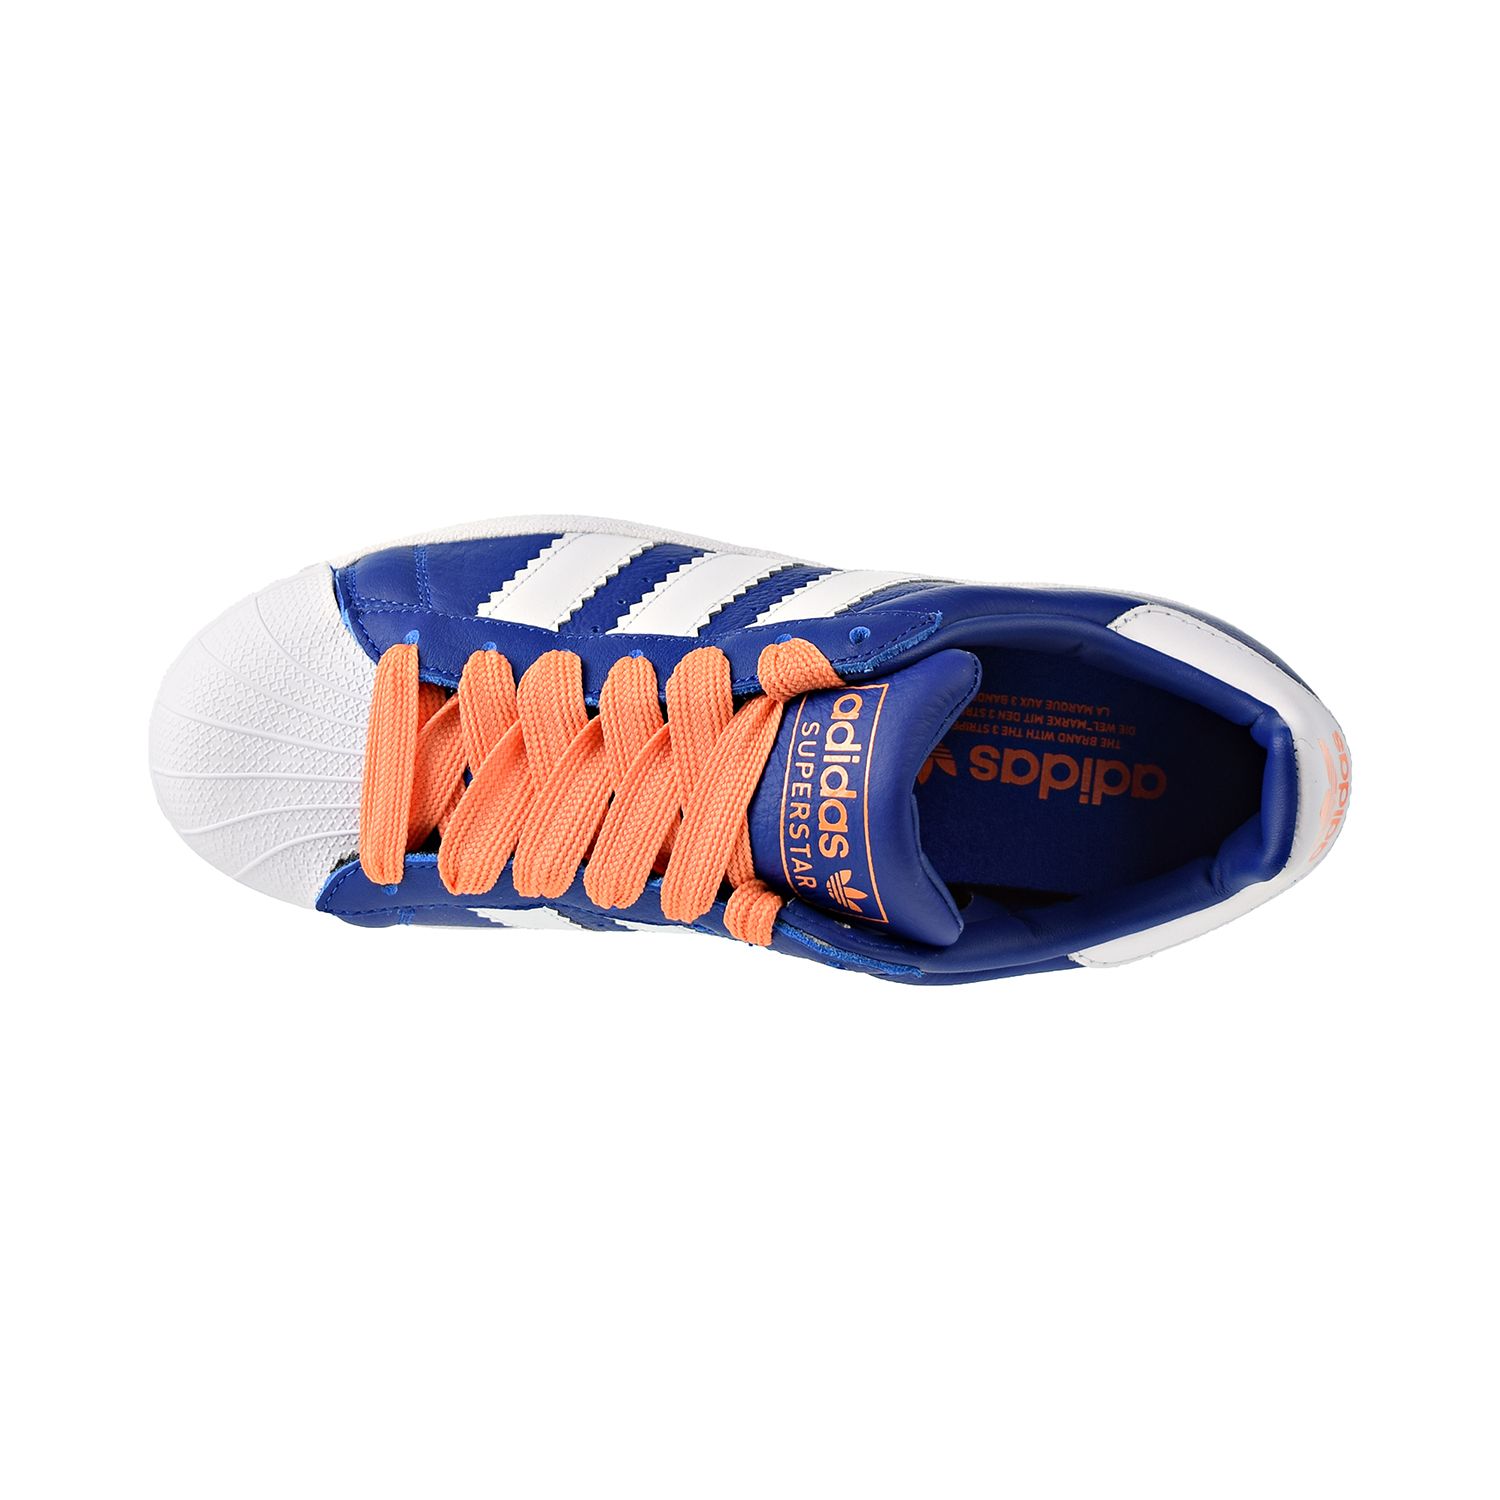 adidas superstar cloud white blue orange